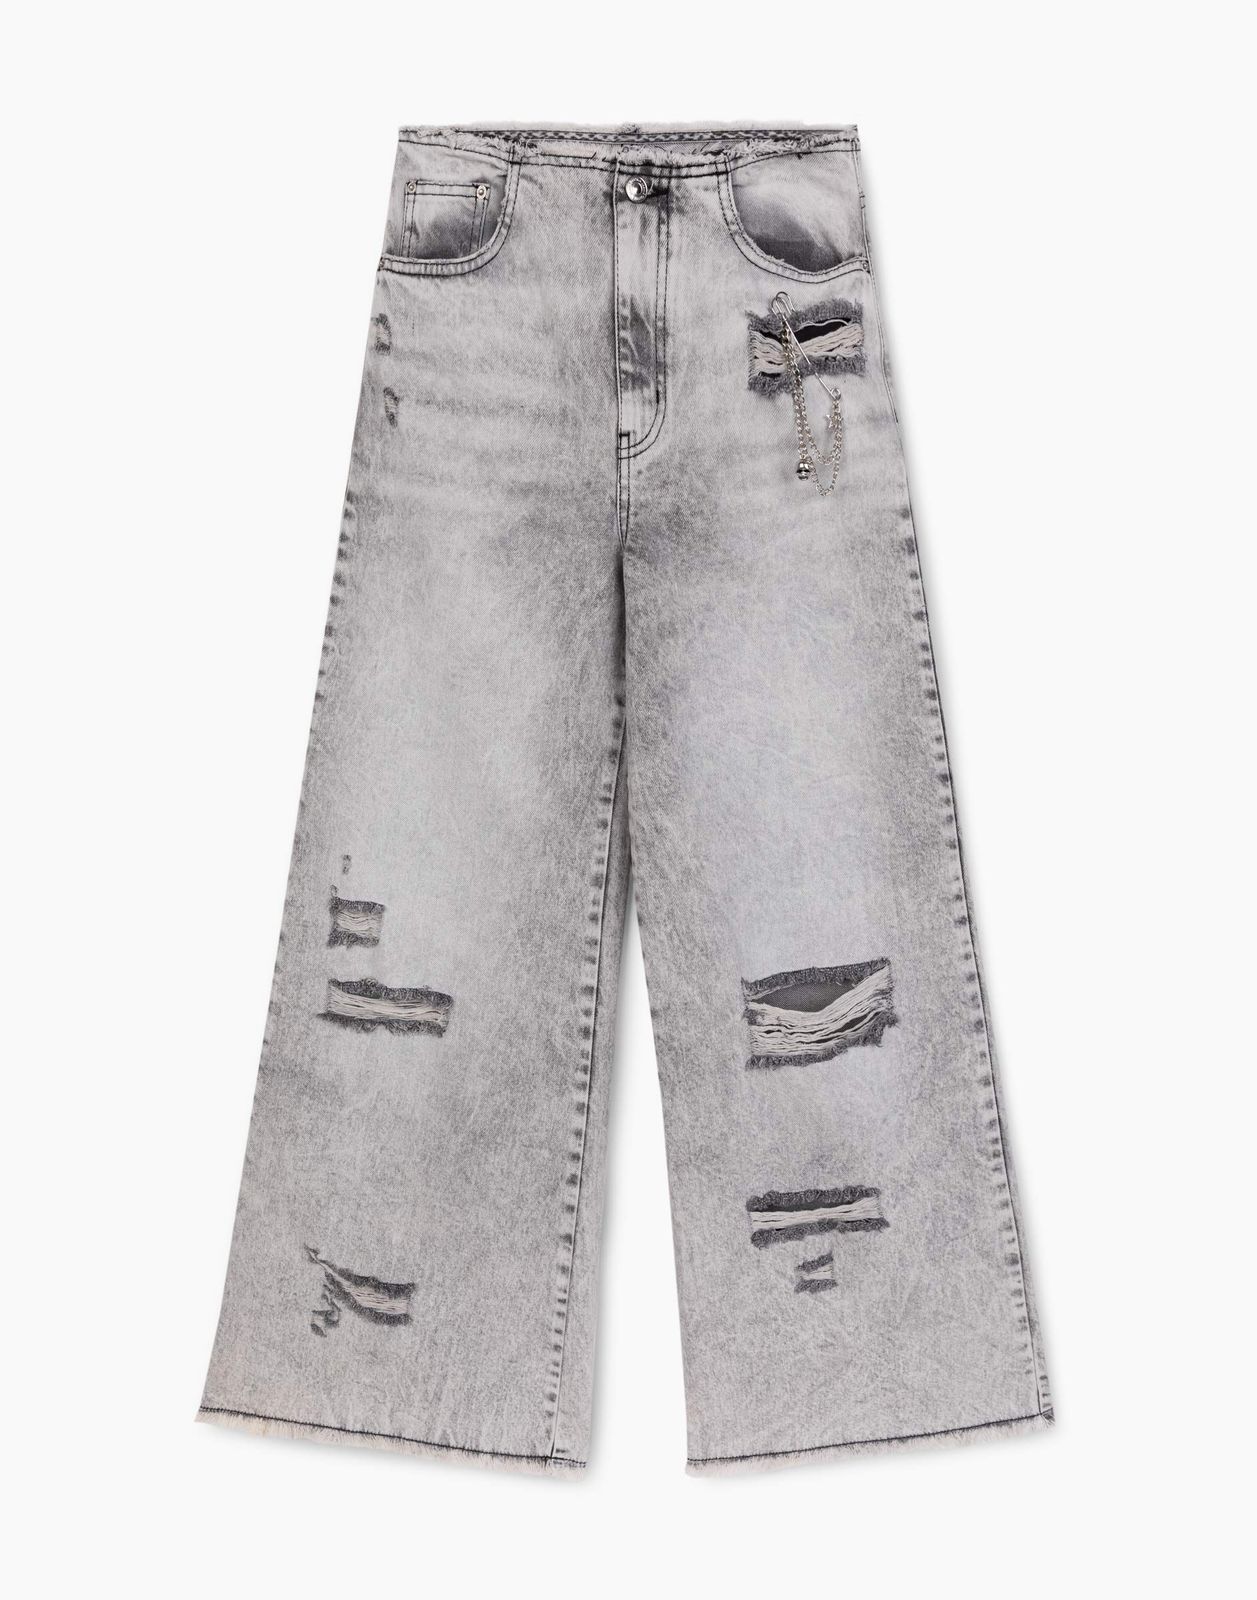 Джинсы Gloria Jeans GJN032569 серый /серый-лайт айс/ 11-12л/152 для девочки джинсы с декоративными дырками для девочки